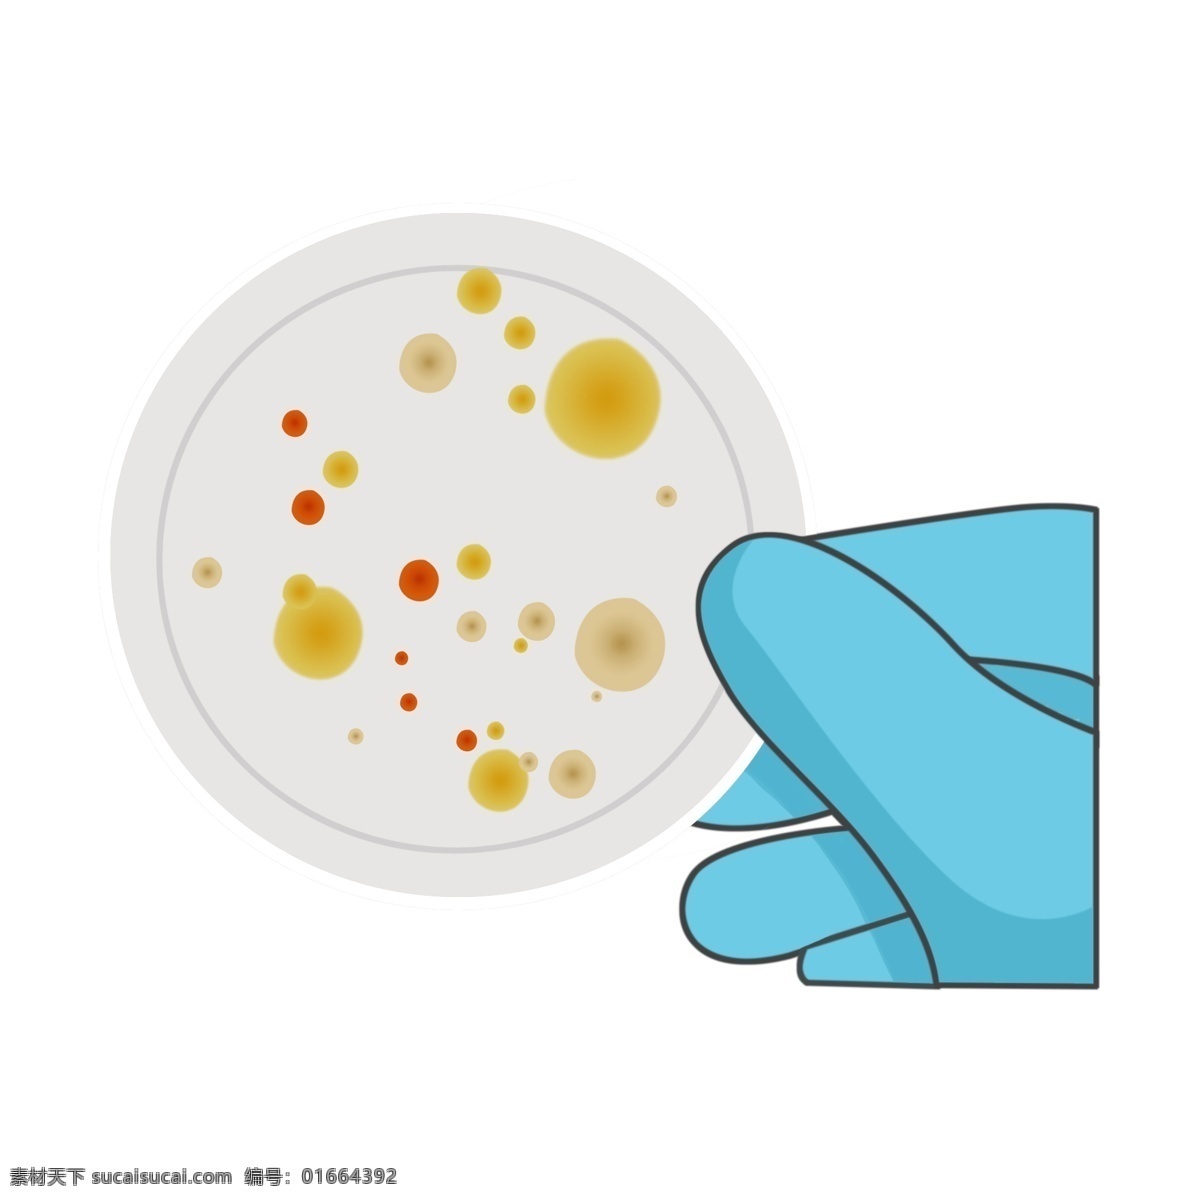 白色 试 片 细菌 插画 蓝色的手套 卡通插画 有害细菌 细菌插画 病菌插画 病菌细菌 白色的试片